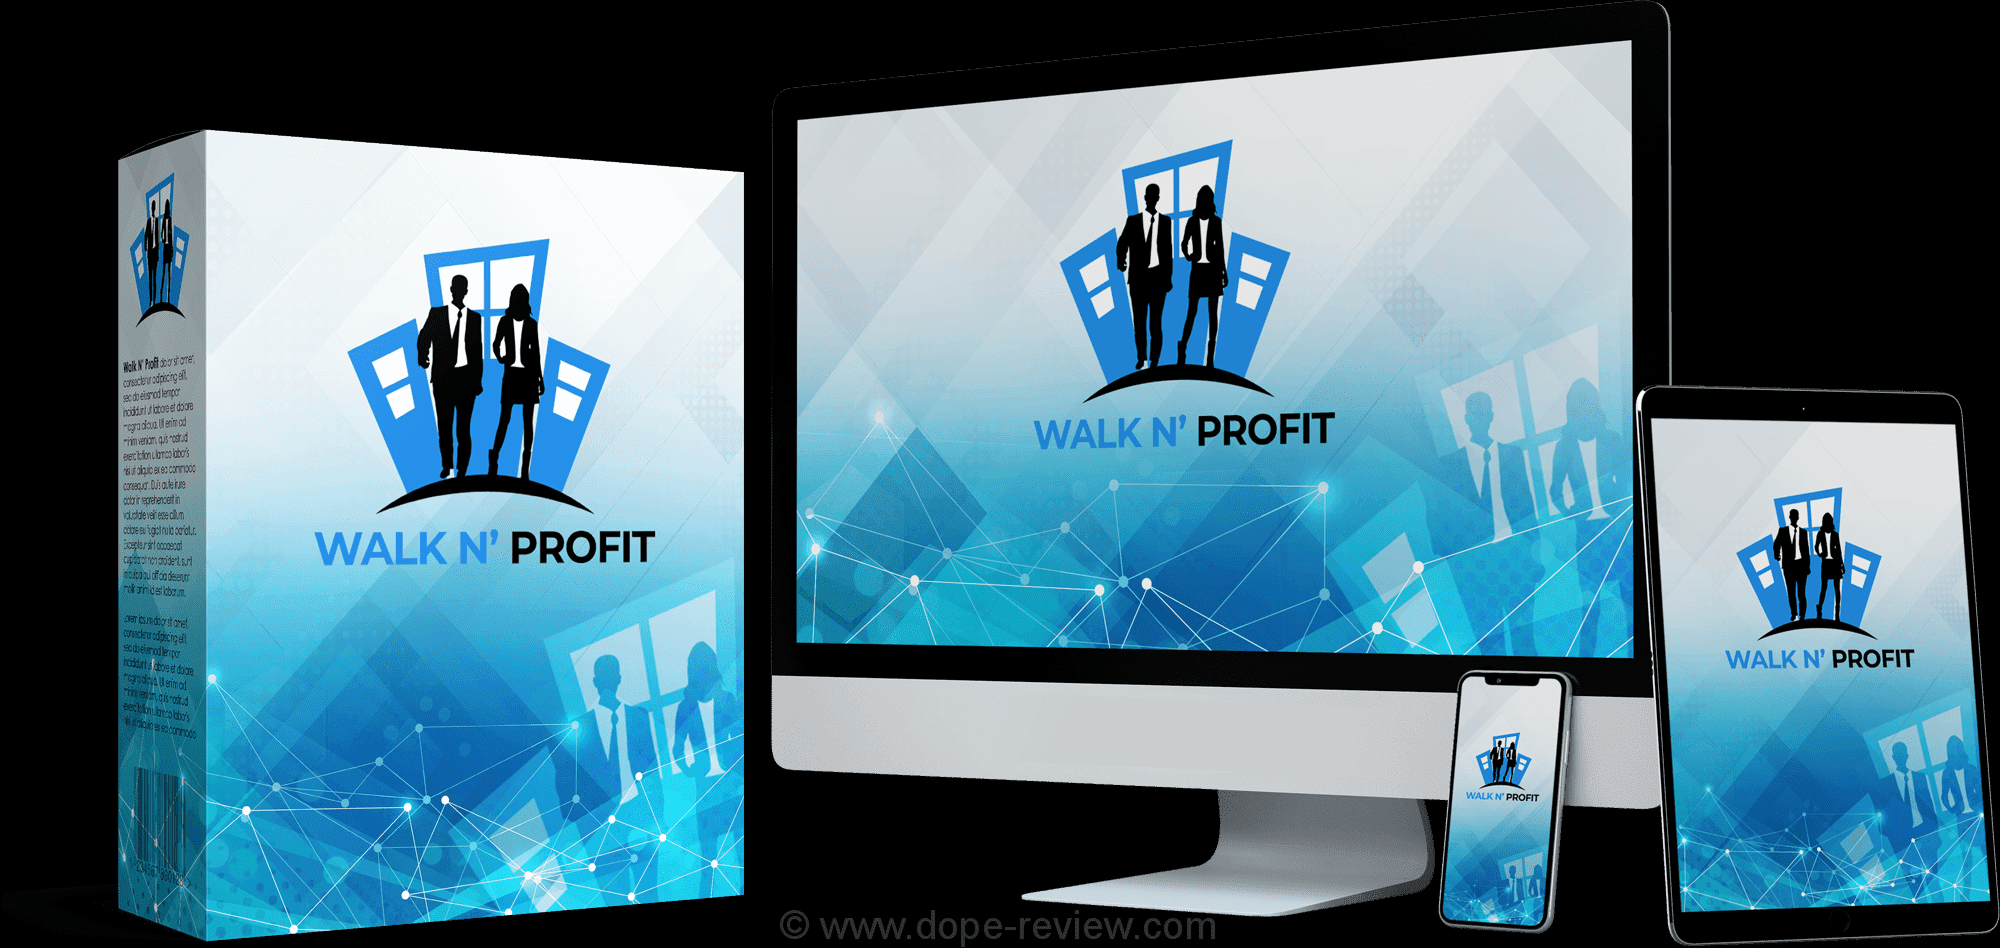 Walk N' Profit